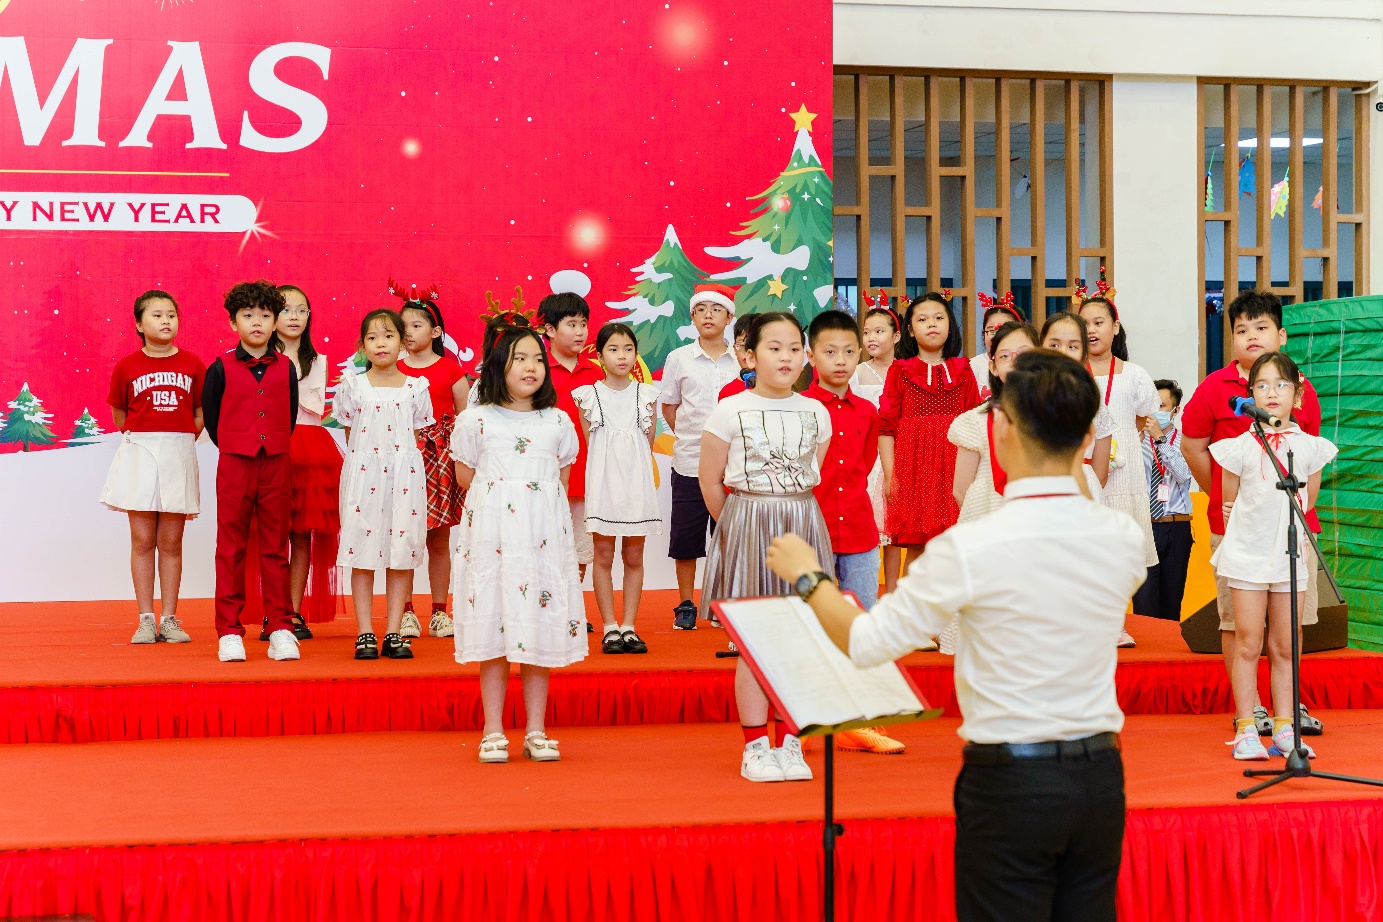 Ông già Noel cao 2m lần đầu tiên ghé thăm lễ hội Giáng sinh ở trường quốc tế - Ảnh 7.